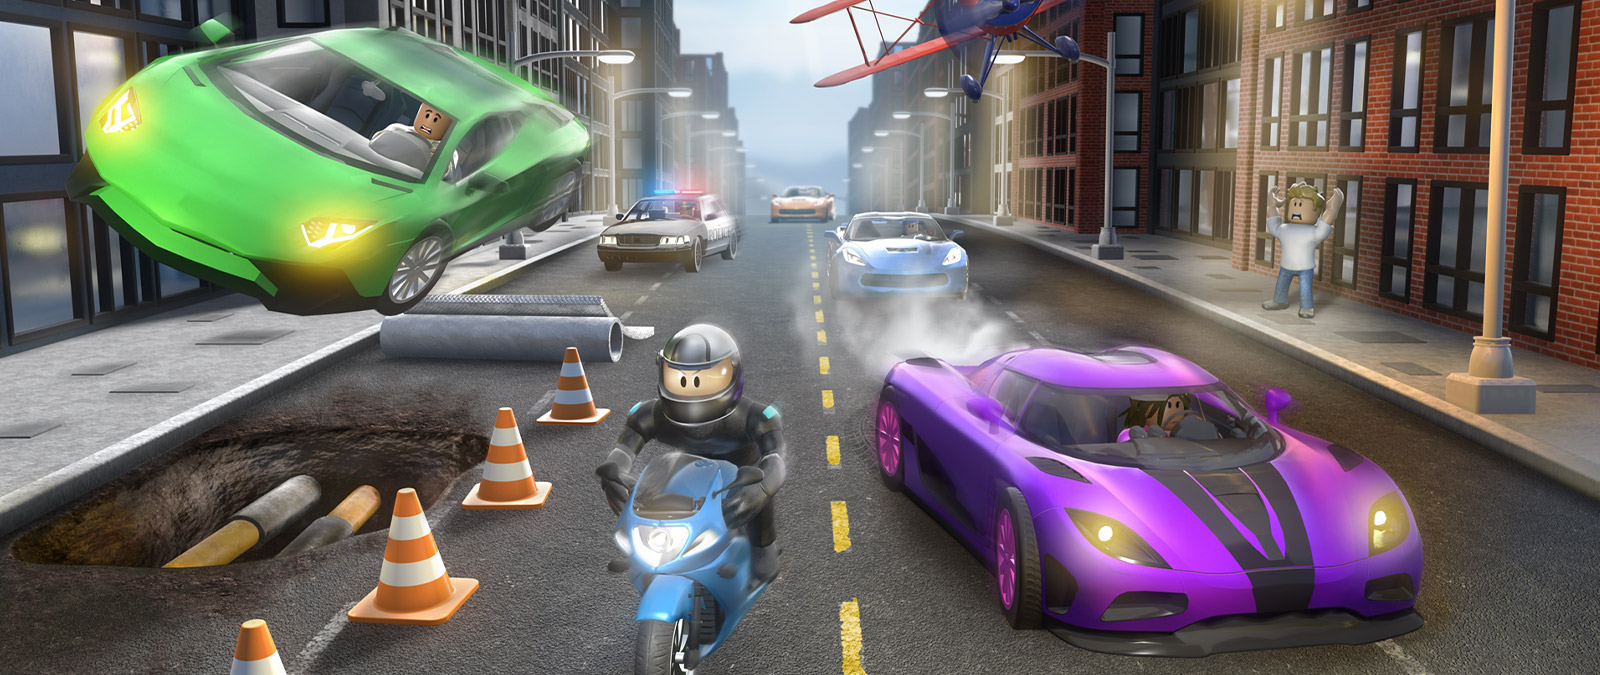 Postać z gry Roblox Vehicle Simulator na ulicy miasta na motocyklu, którą gonią inne pojazdy